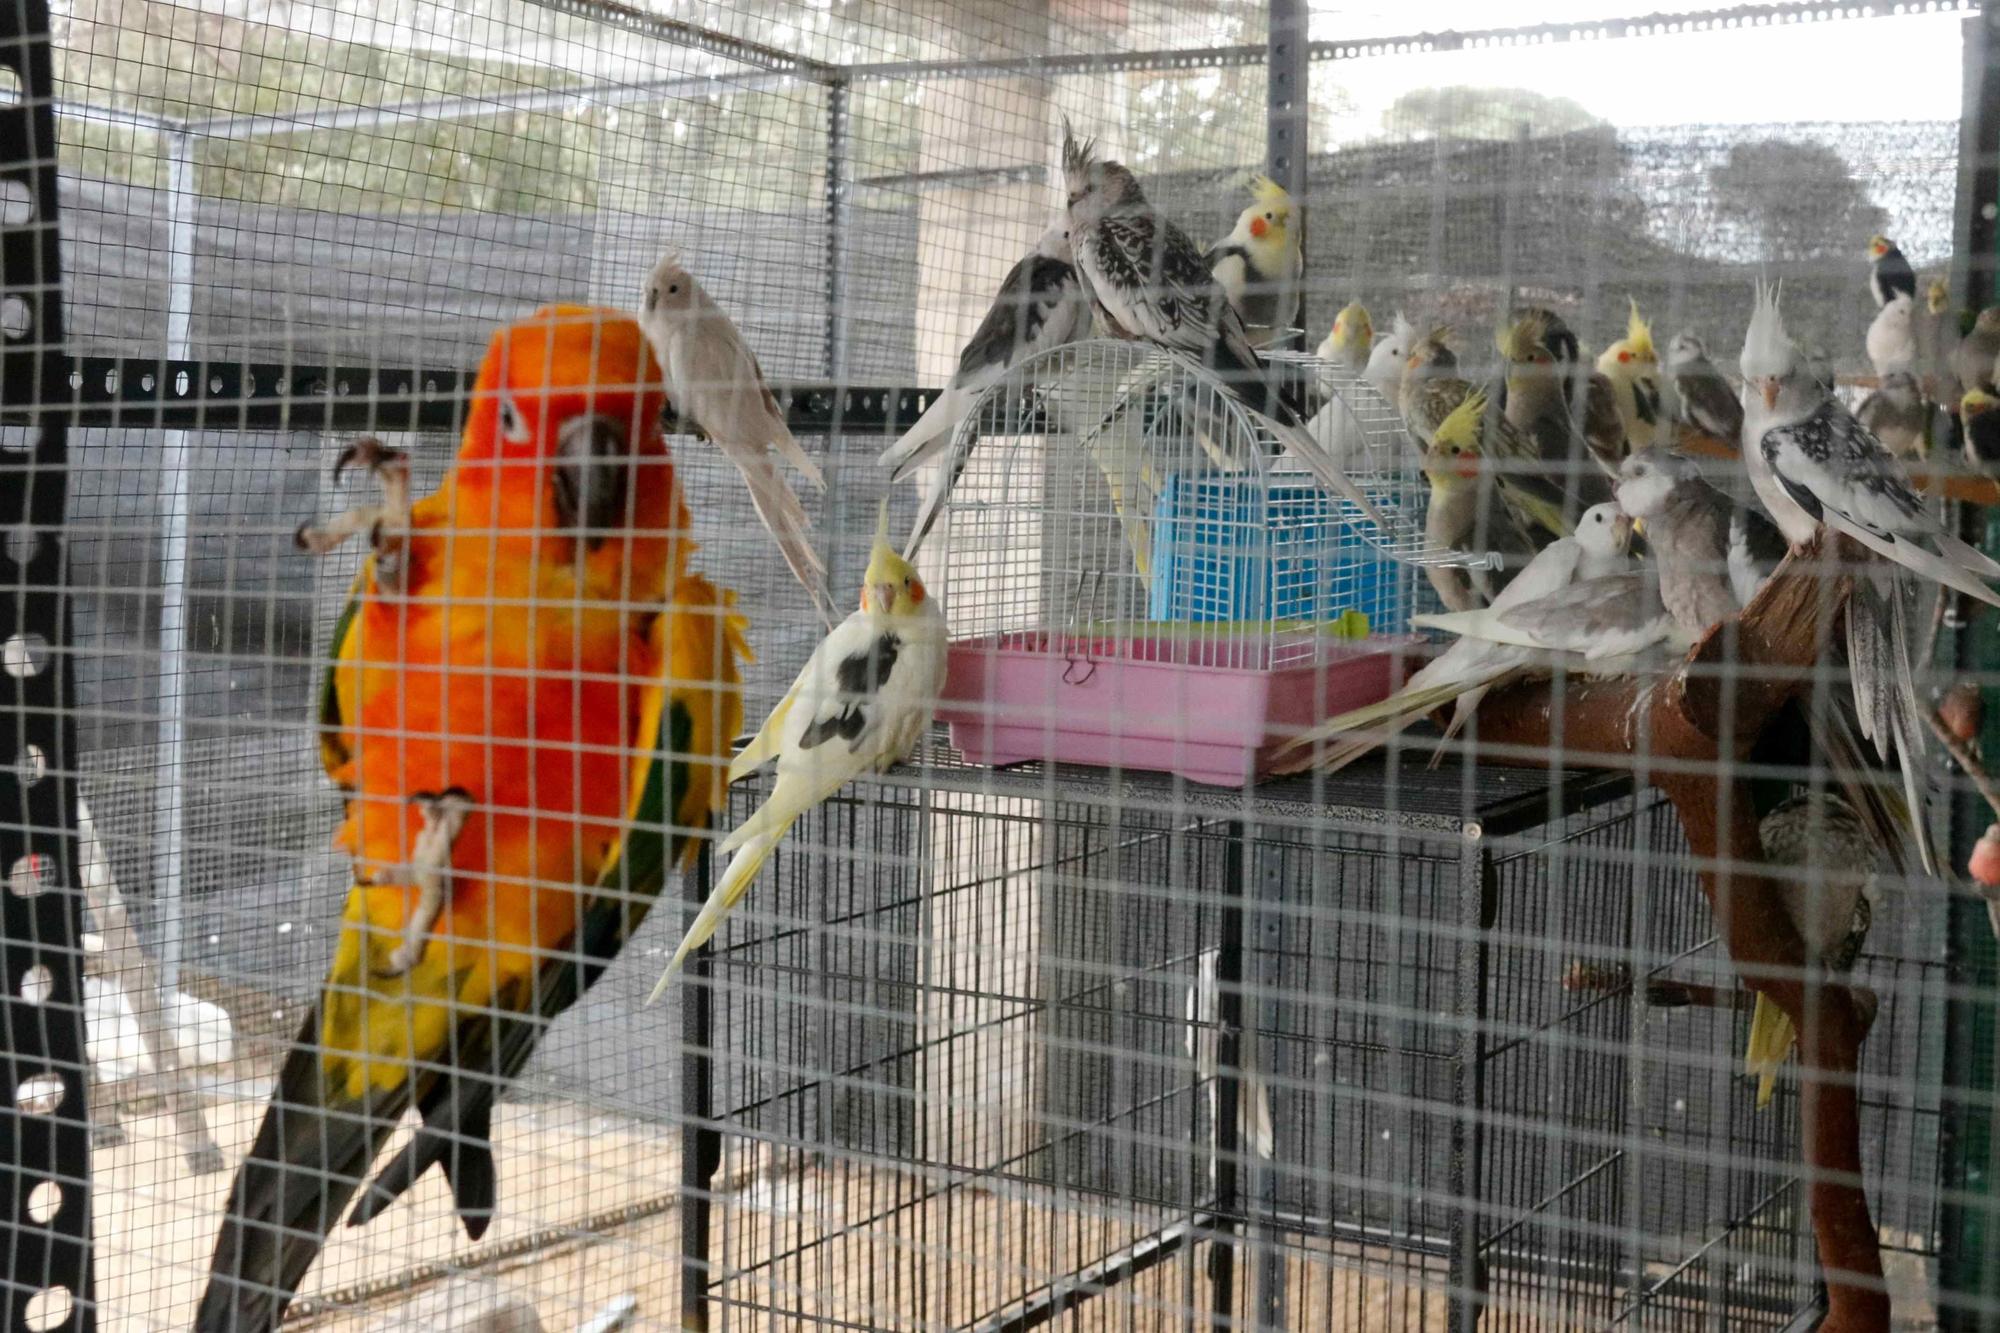 Crit d'ajuda de la protectora gironina Ave Fénix amb 300 aus exòtiques